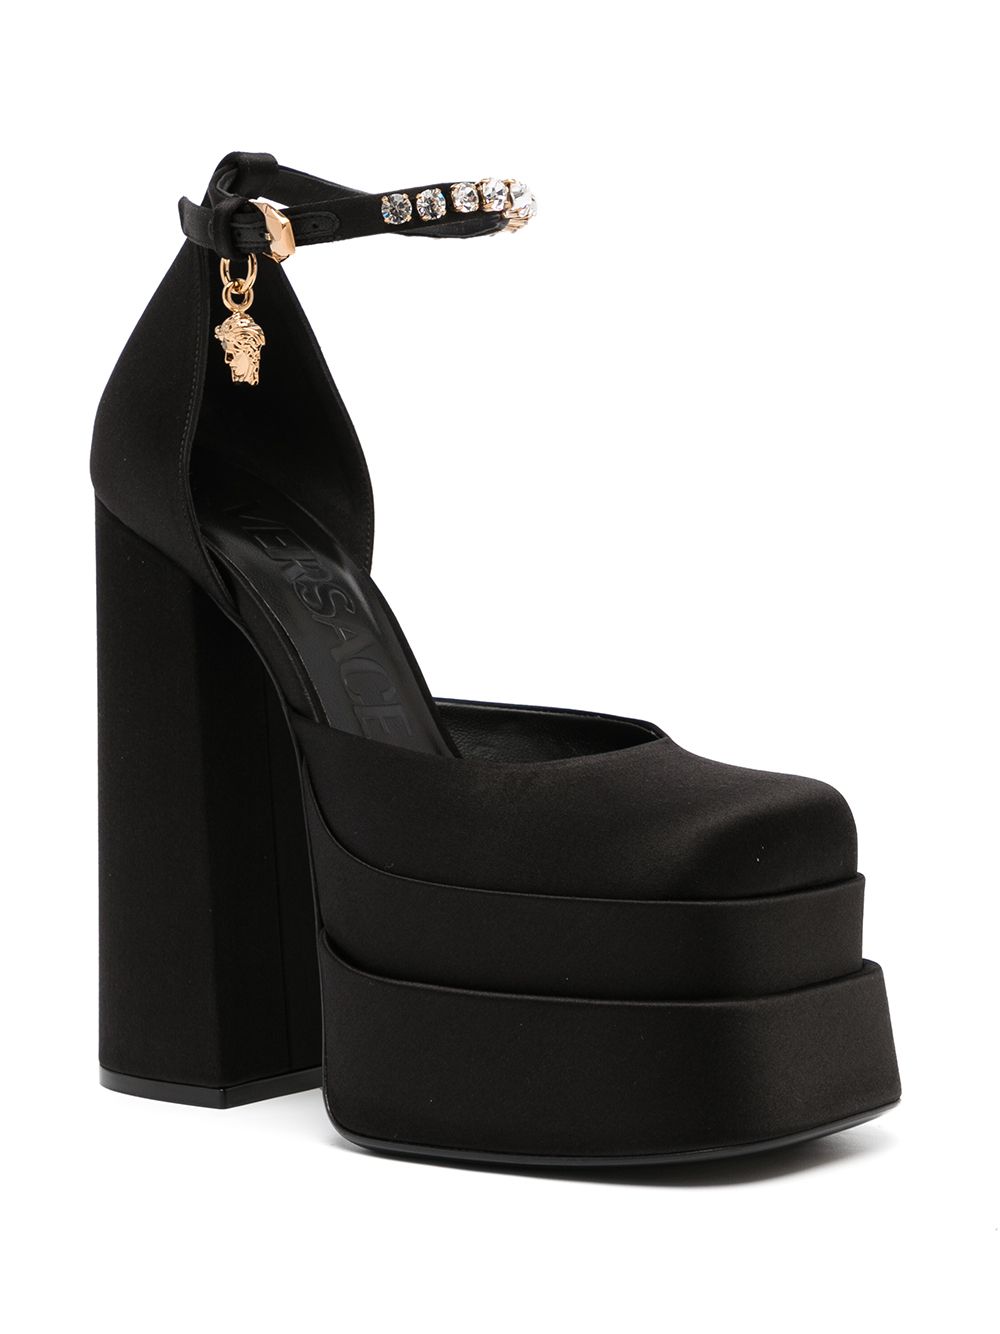 Versace With Heel Black